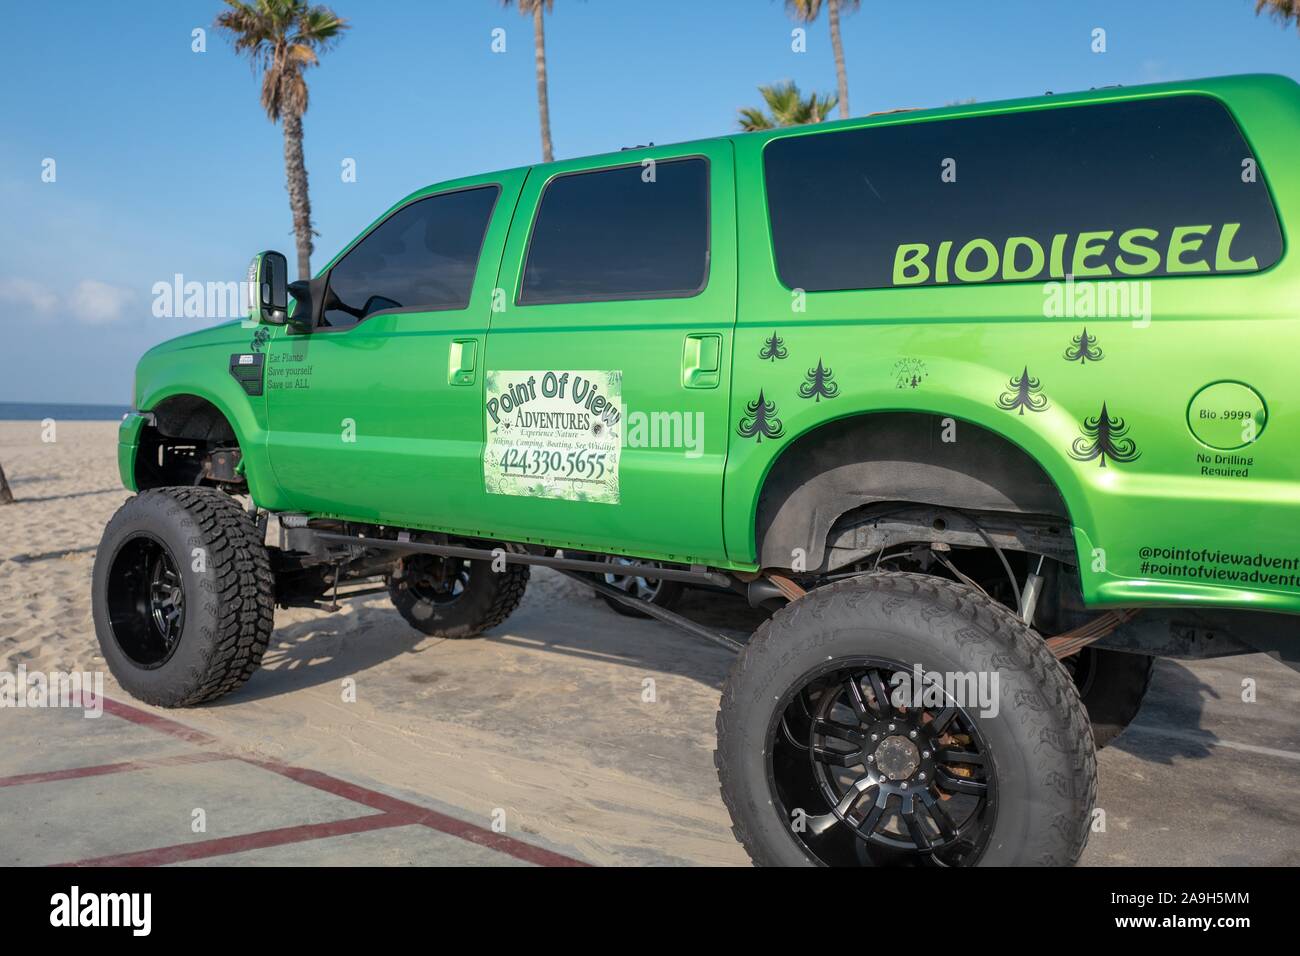 Große Monster truck Stil Fahrzeug in grüner Farbe, mit Text lesen Biodiesel, Werbung die Vorteile von pflanzlichen Biodiesel, Venice, Los Angeles, Kalifornien, November 5, 2019. () Stockfoto